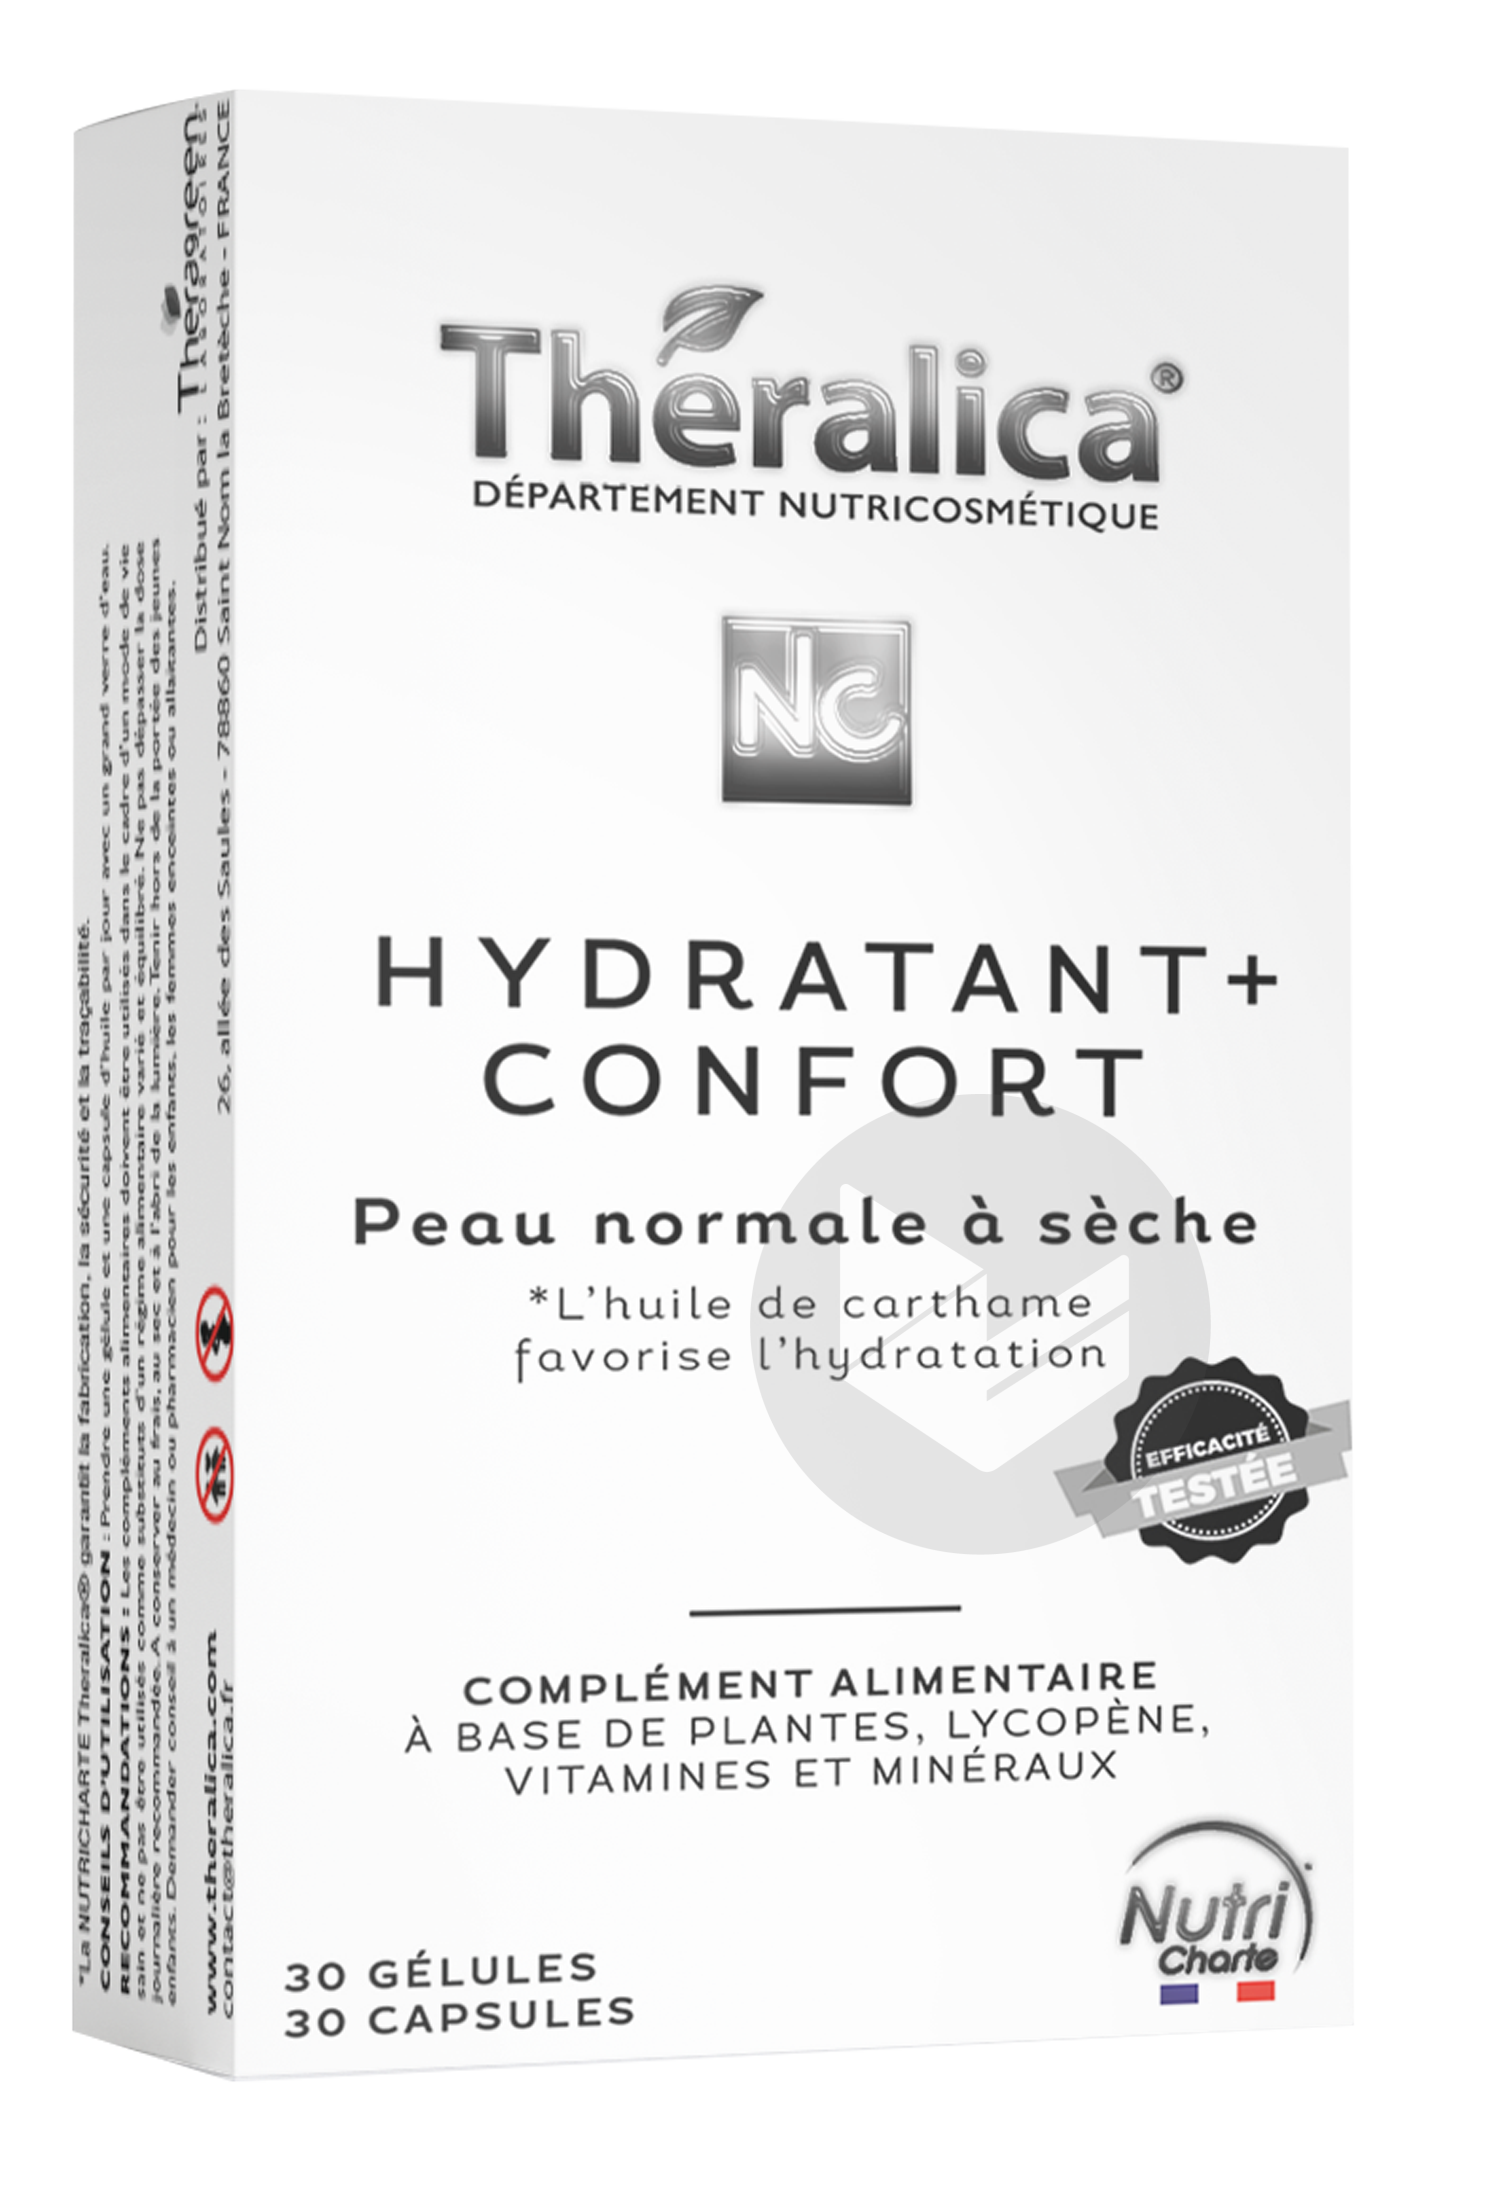 Theralica Hydratant Confort + Peaux normales à sèches, peaux sensibles